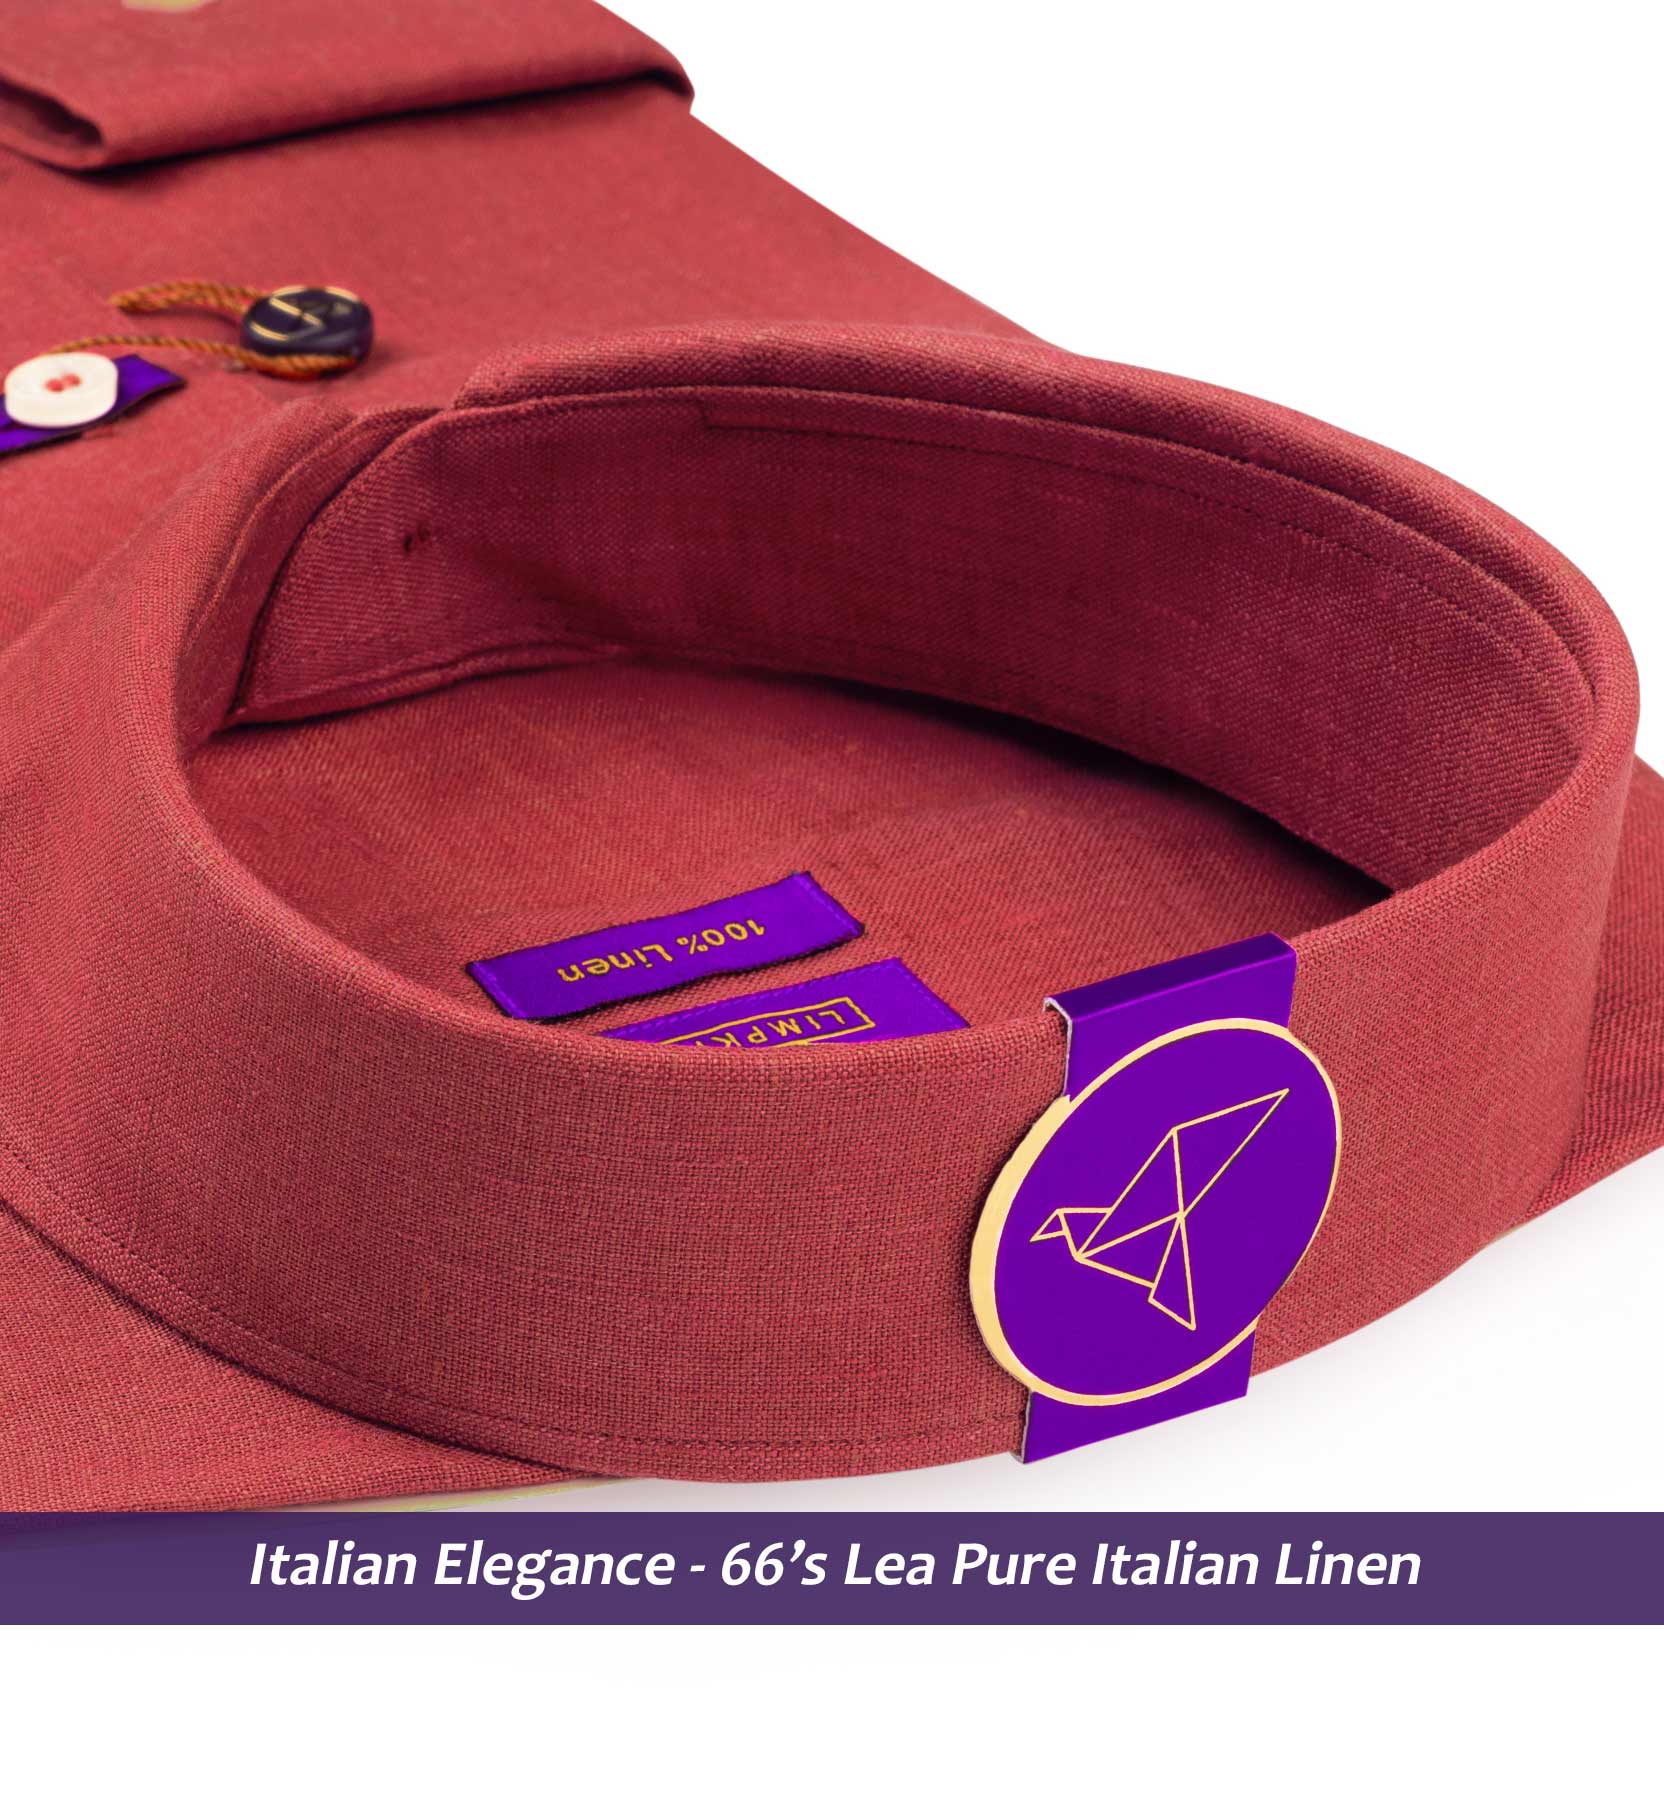 Matera- Auburn Red Solid Linen- 66's Lea Pure Italian Linen